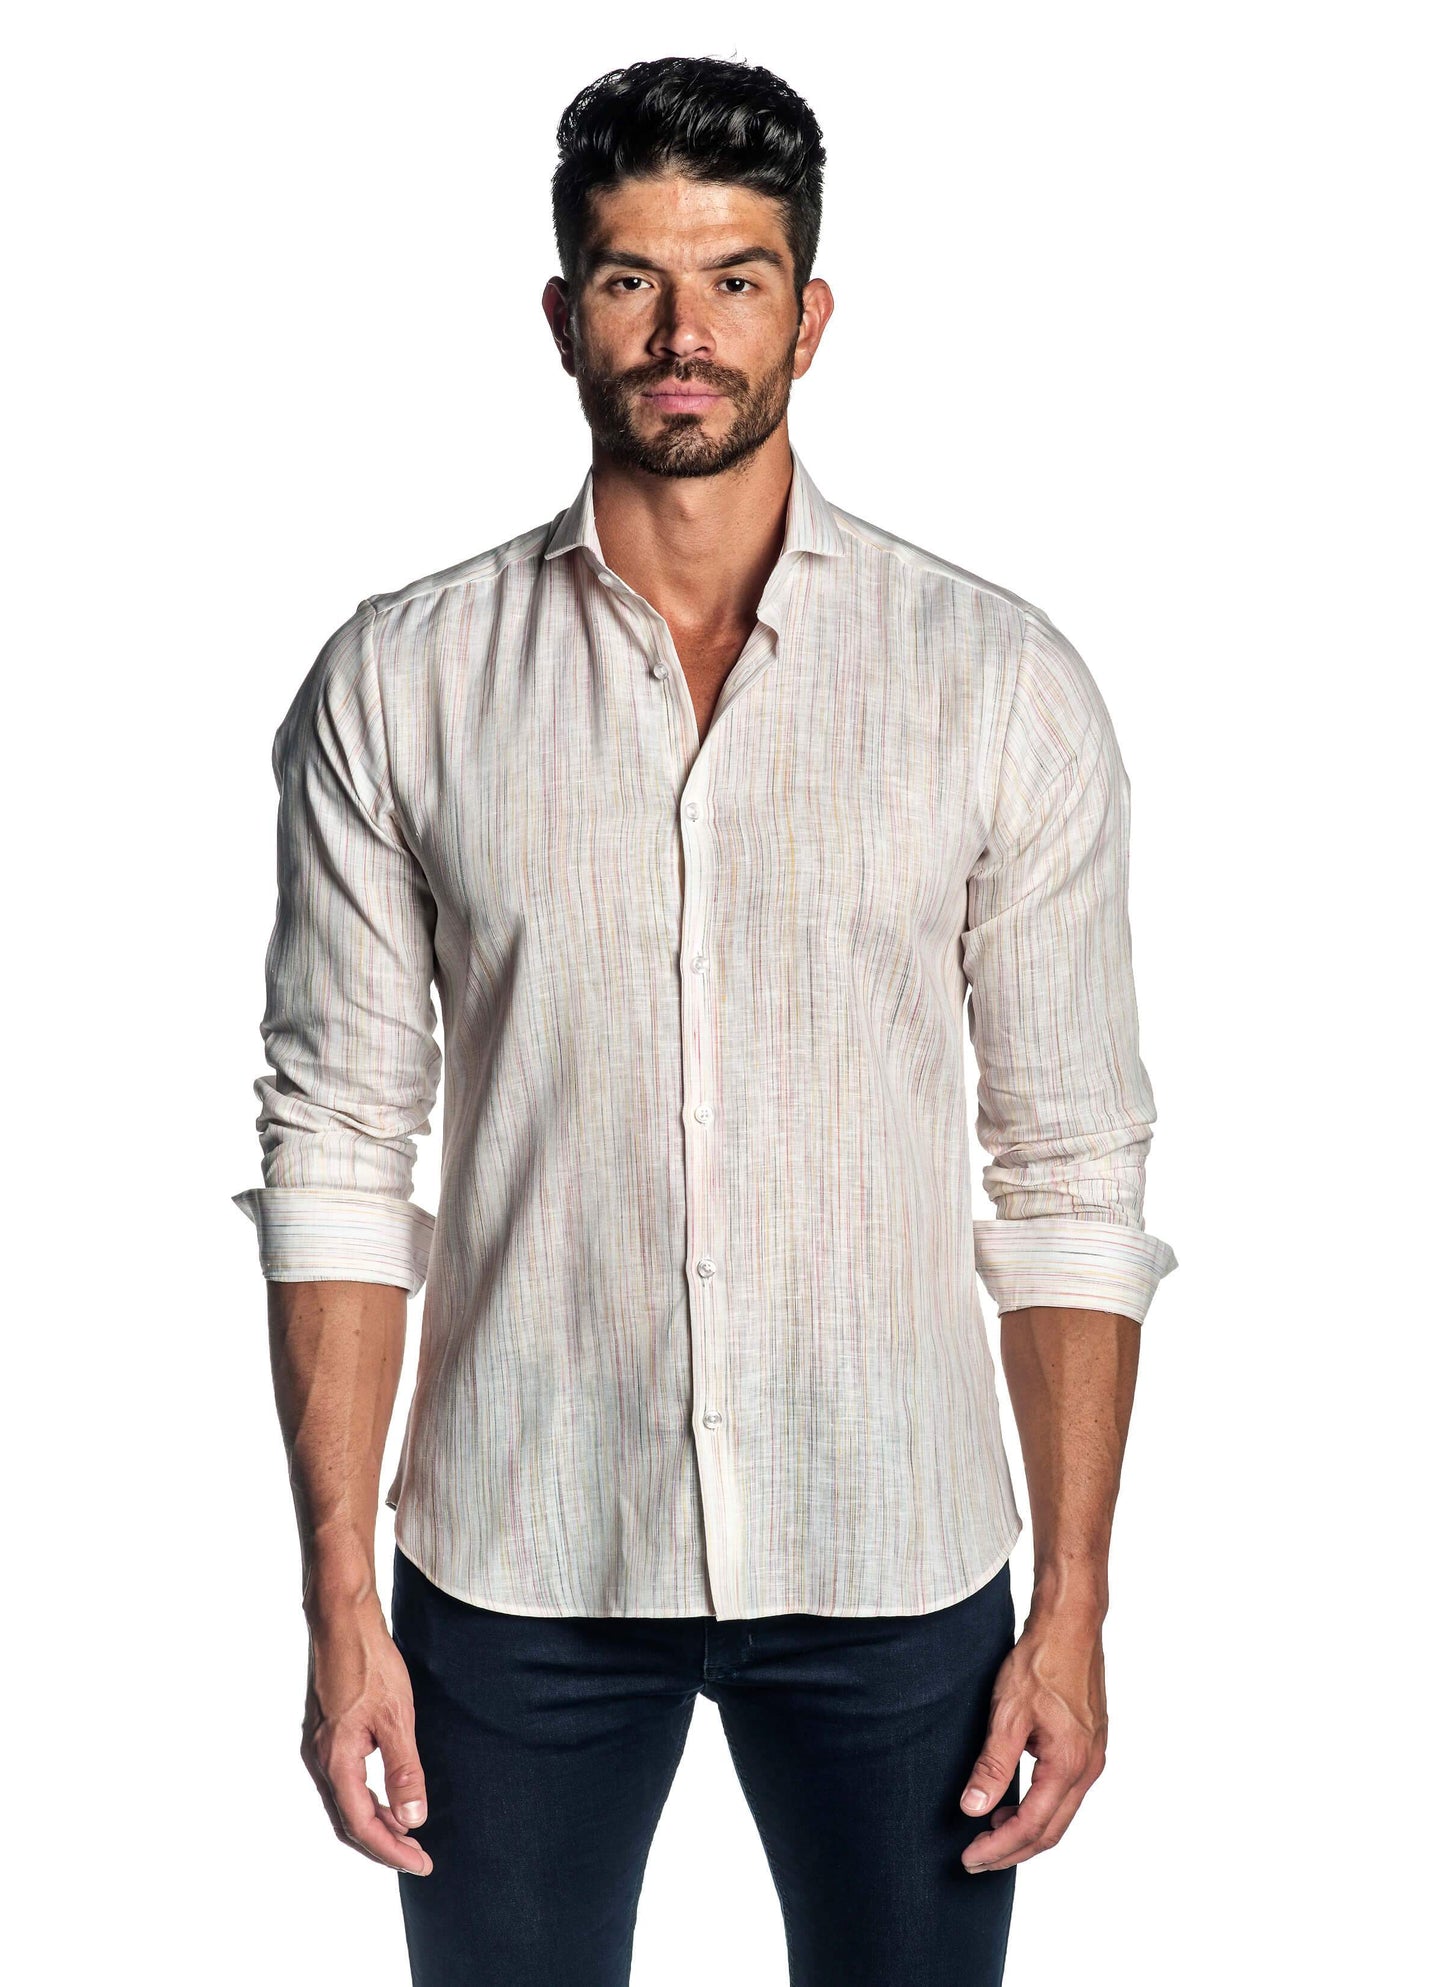 White Melange Shirt for Men AH-ITA-T-9015 - Front - Jared Lang